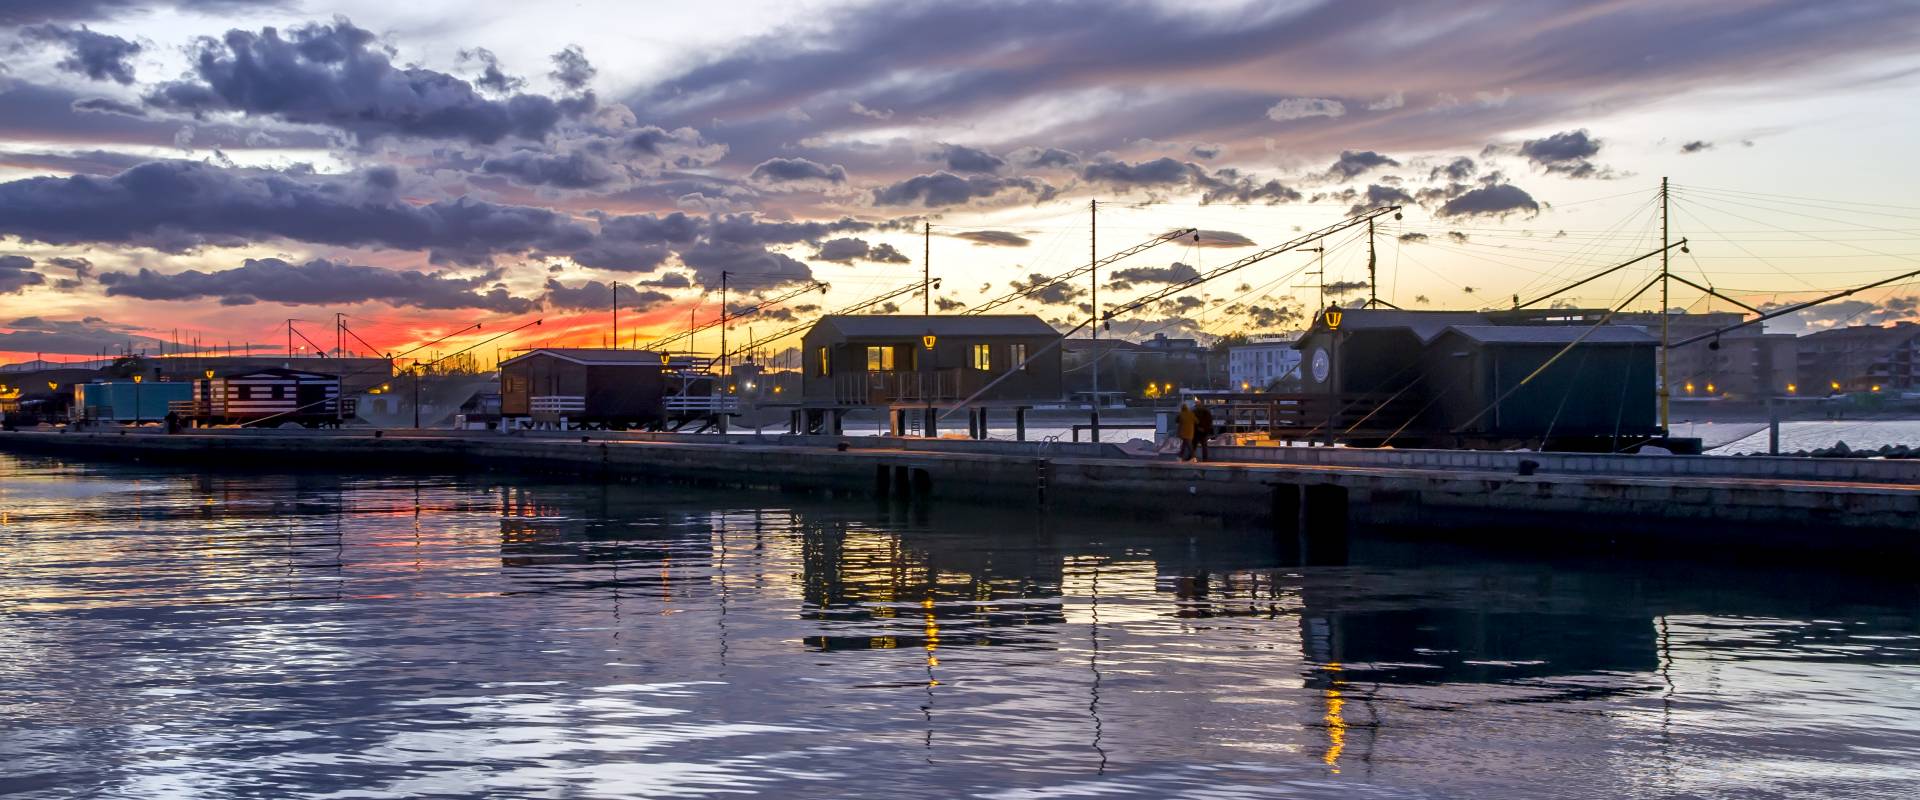 Porto canale , capanni da pesca al tramonto foto di Marco della pasqua